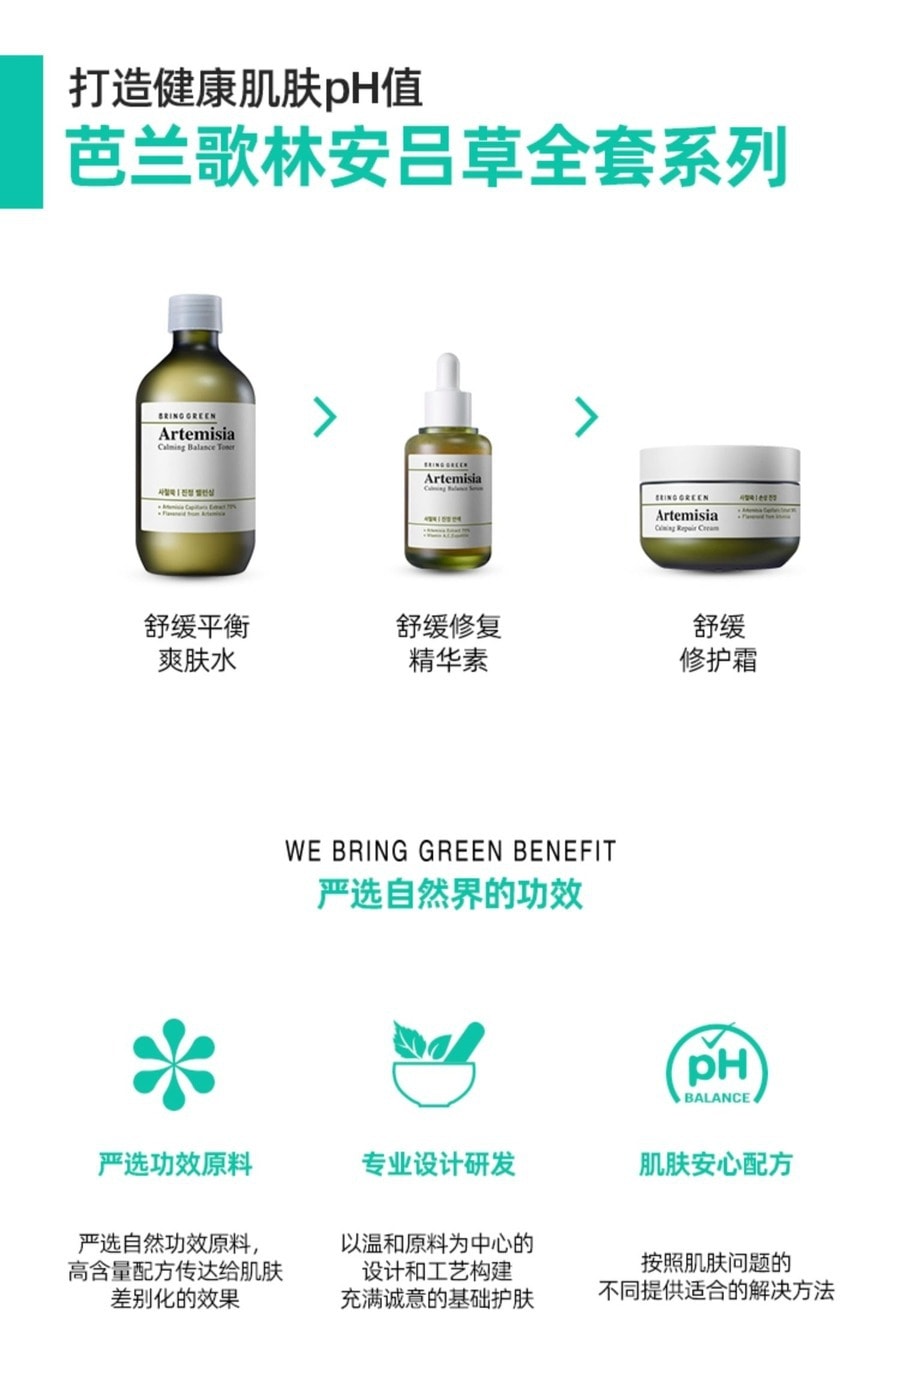 韓國BRING GREEN 【大容量裝】 安呂草 鎮靜平衡肌膚 爽膚水 510 毫升